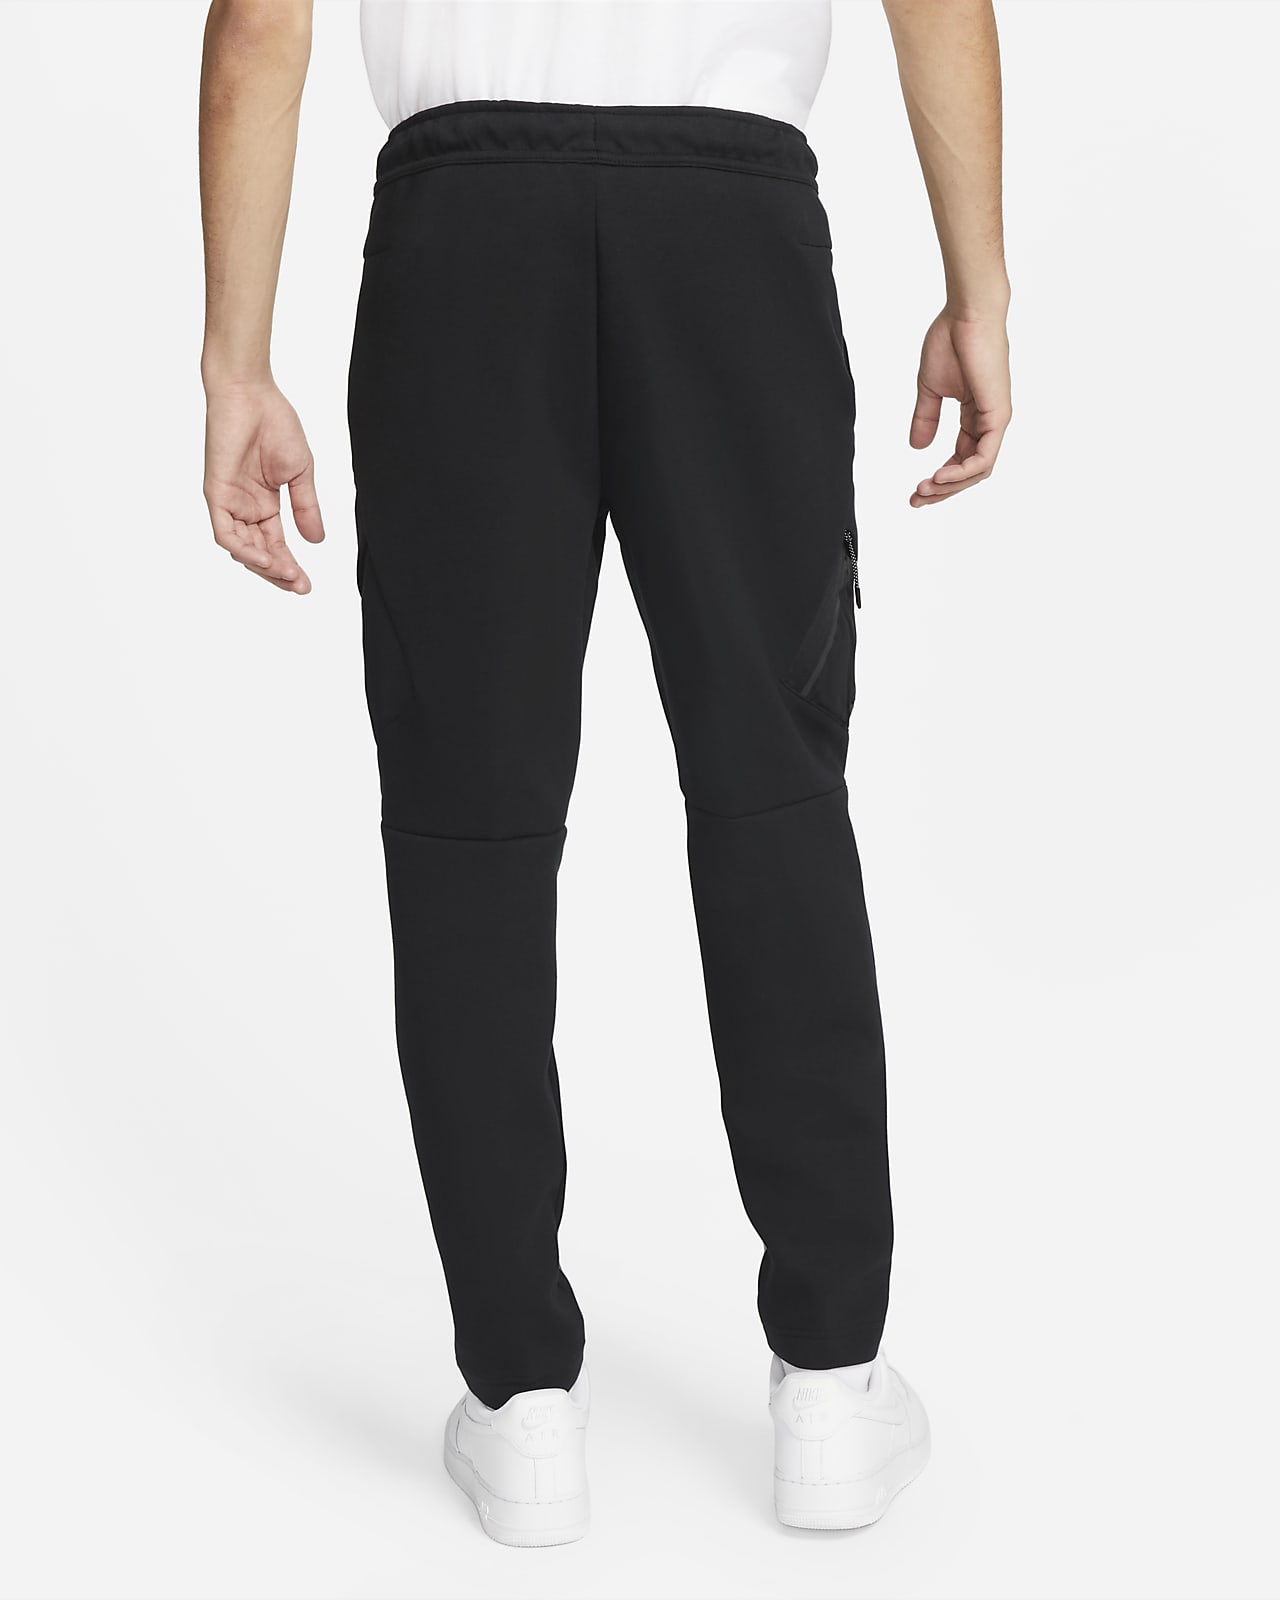 Nike Men's Sportswear Tech Fleece Pants Black 861679-010